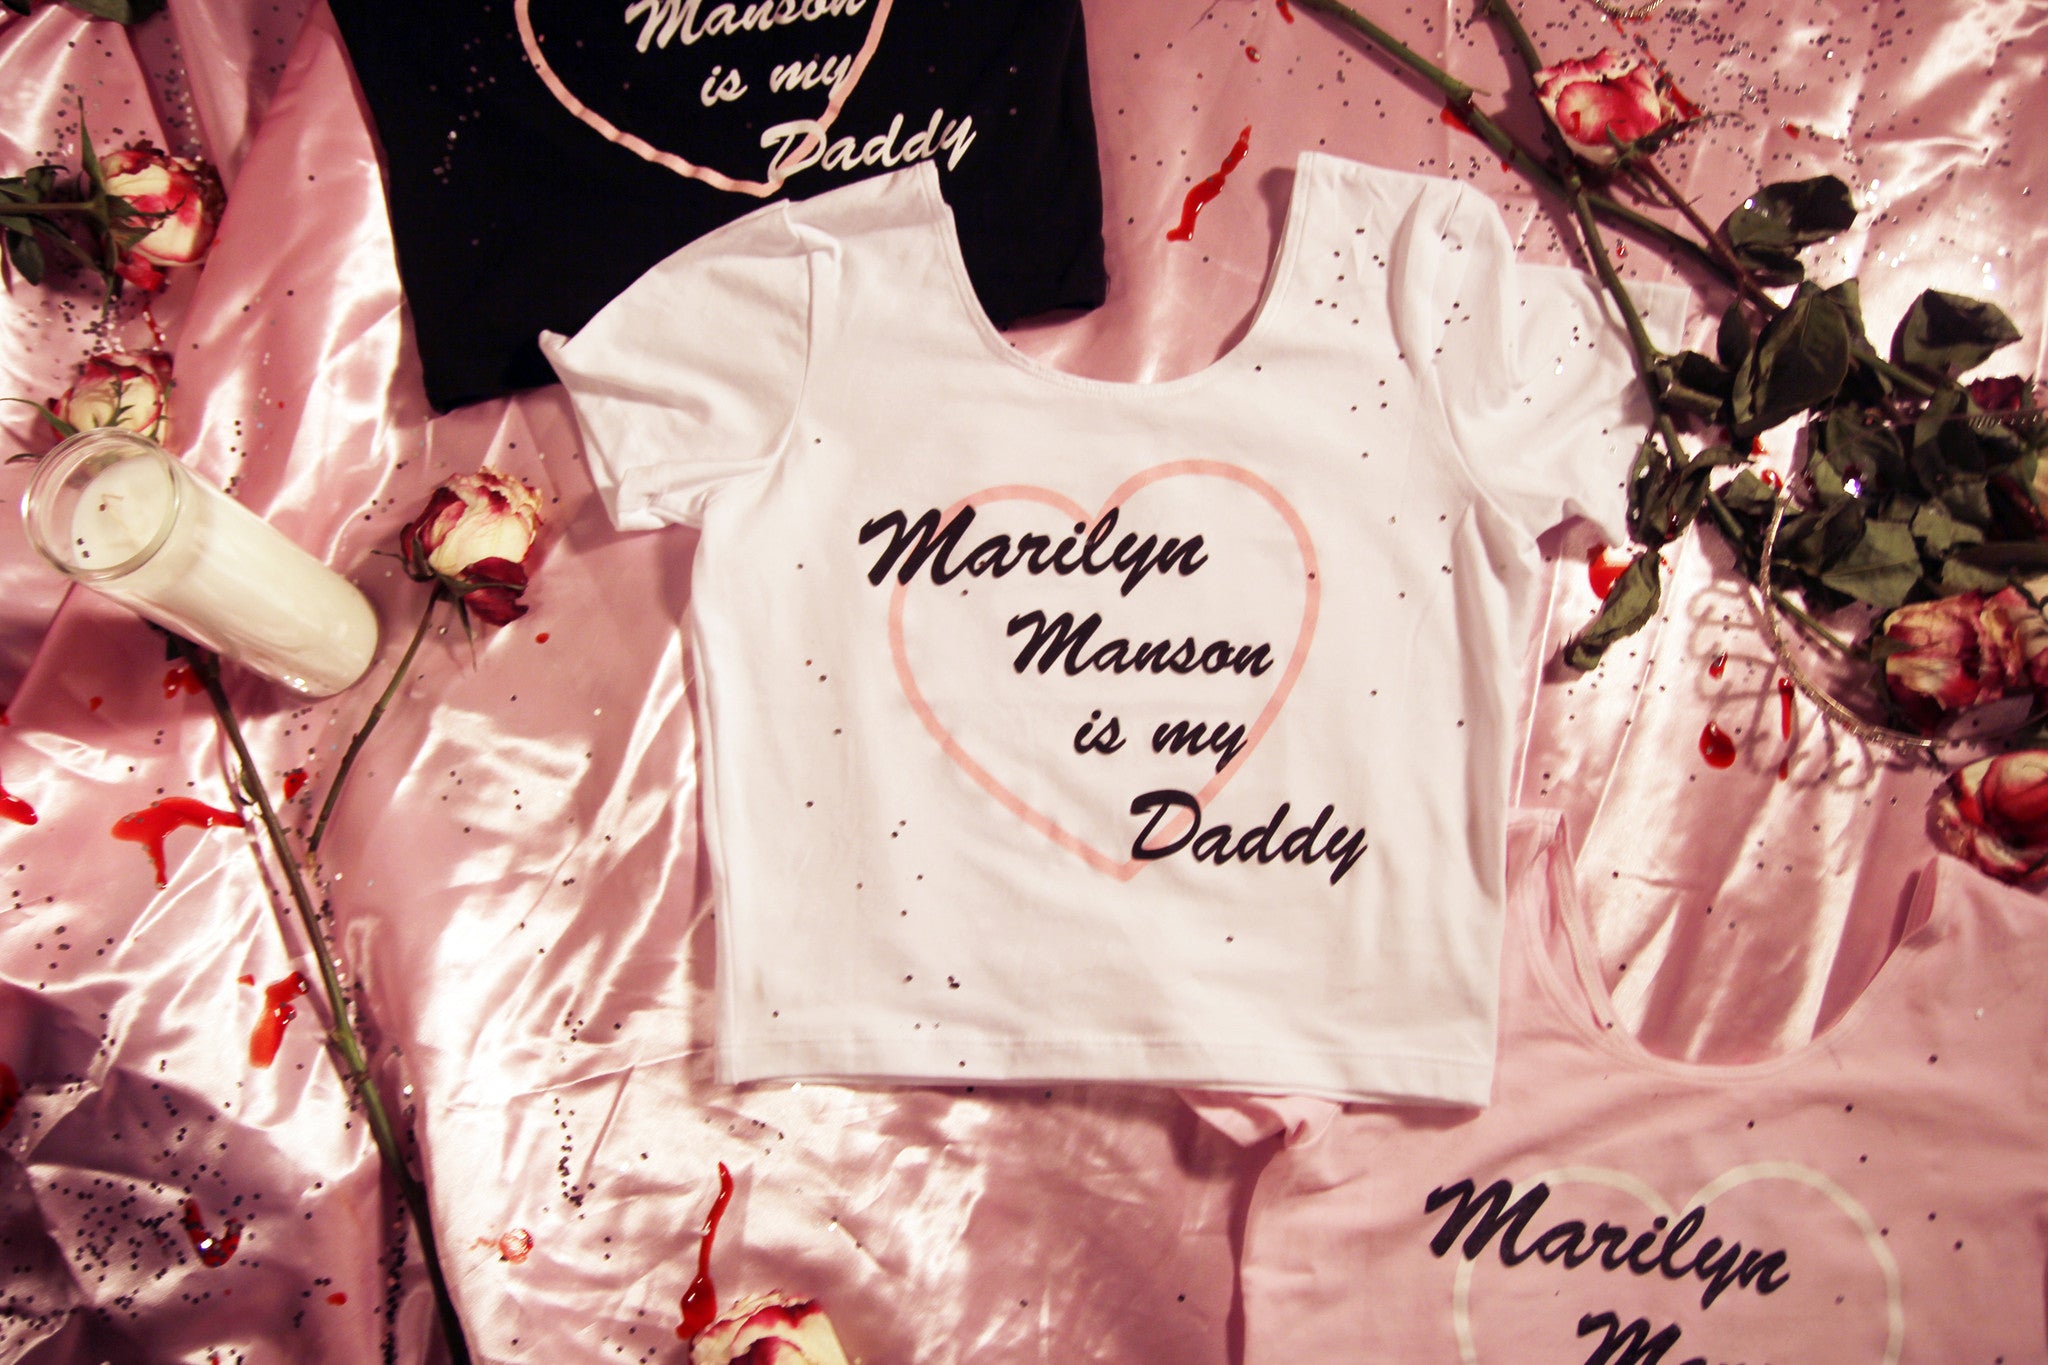 MARILYN MANSON IS MY DADDY